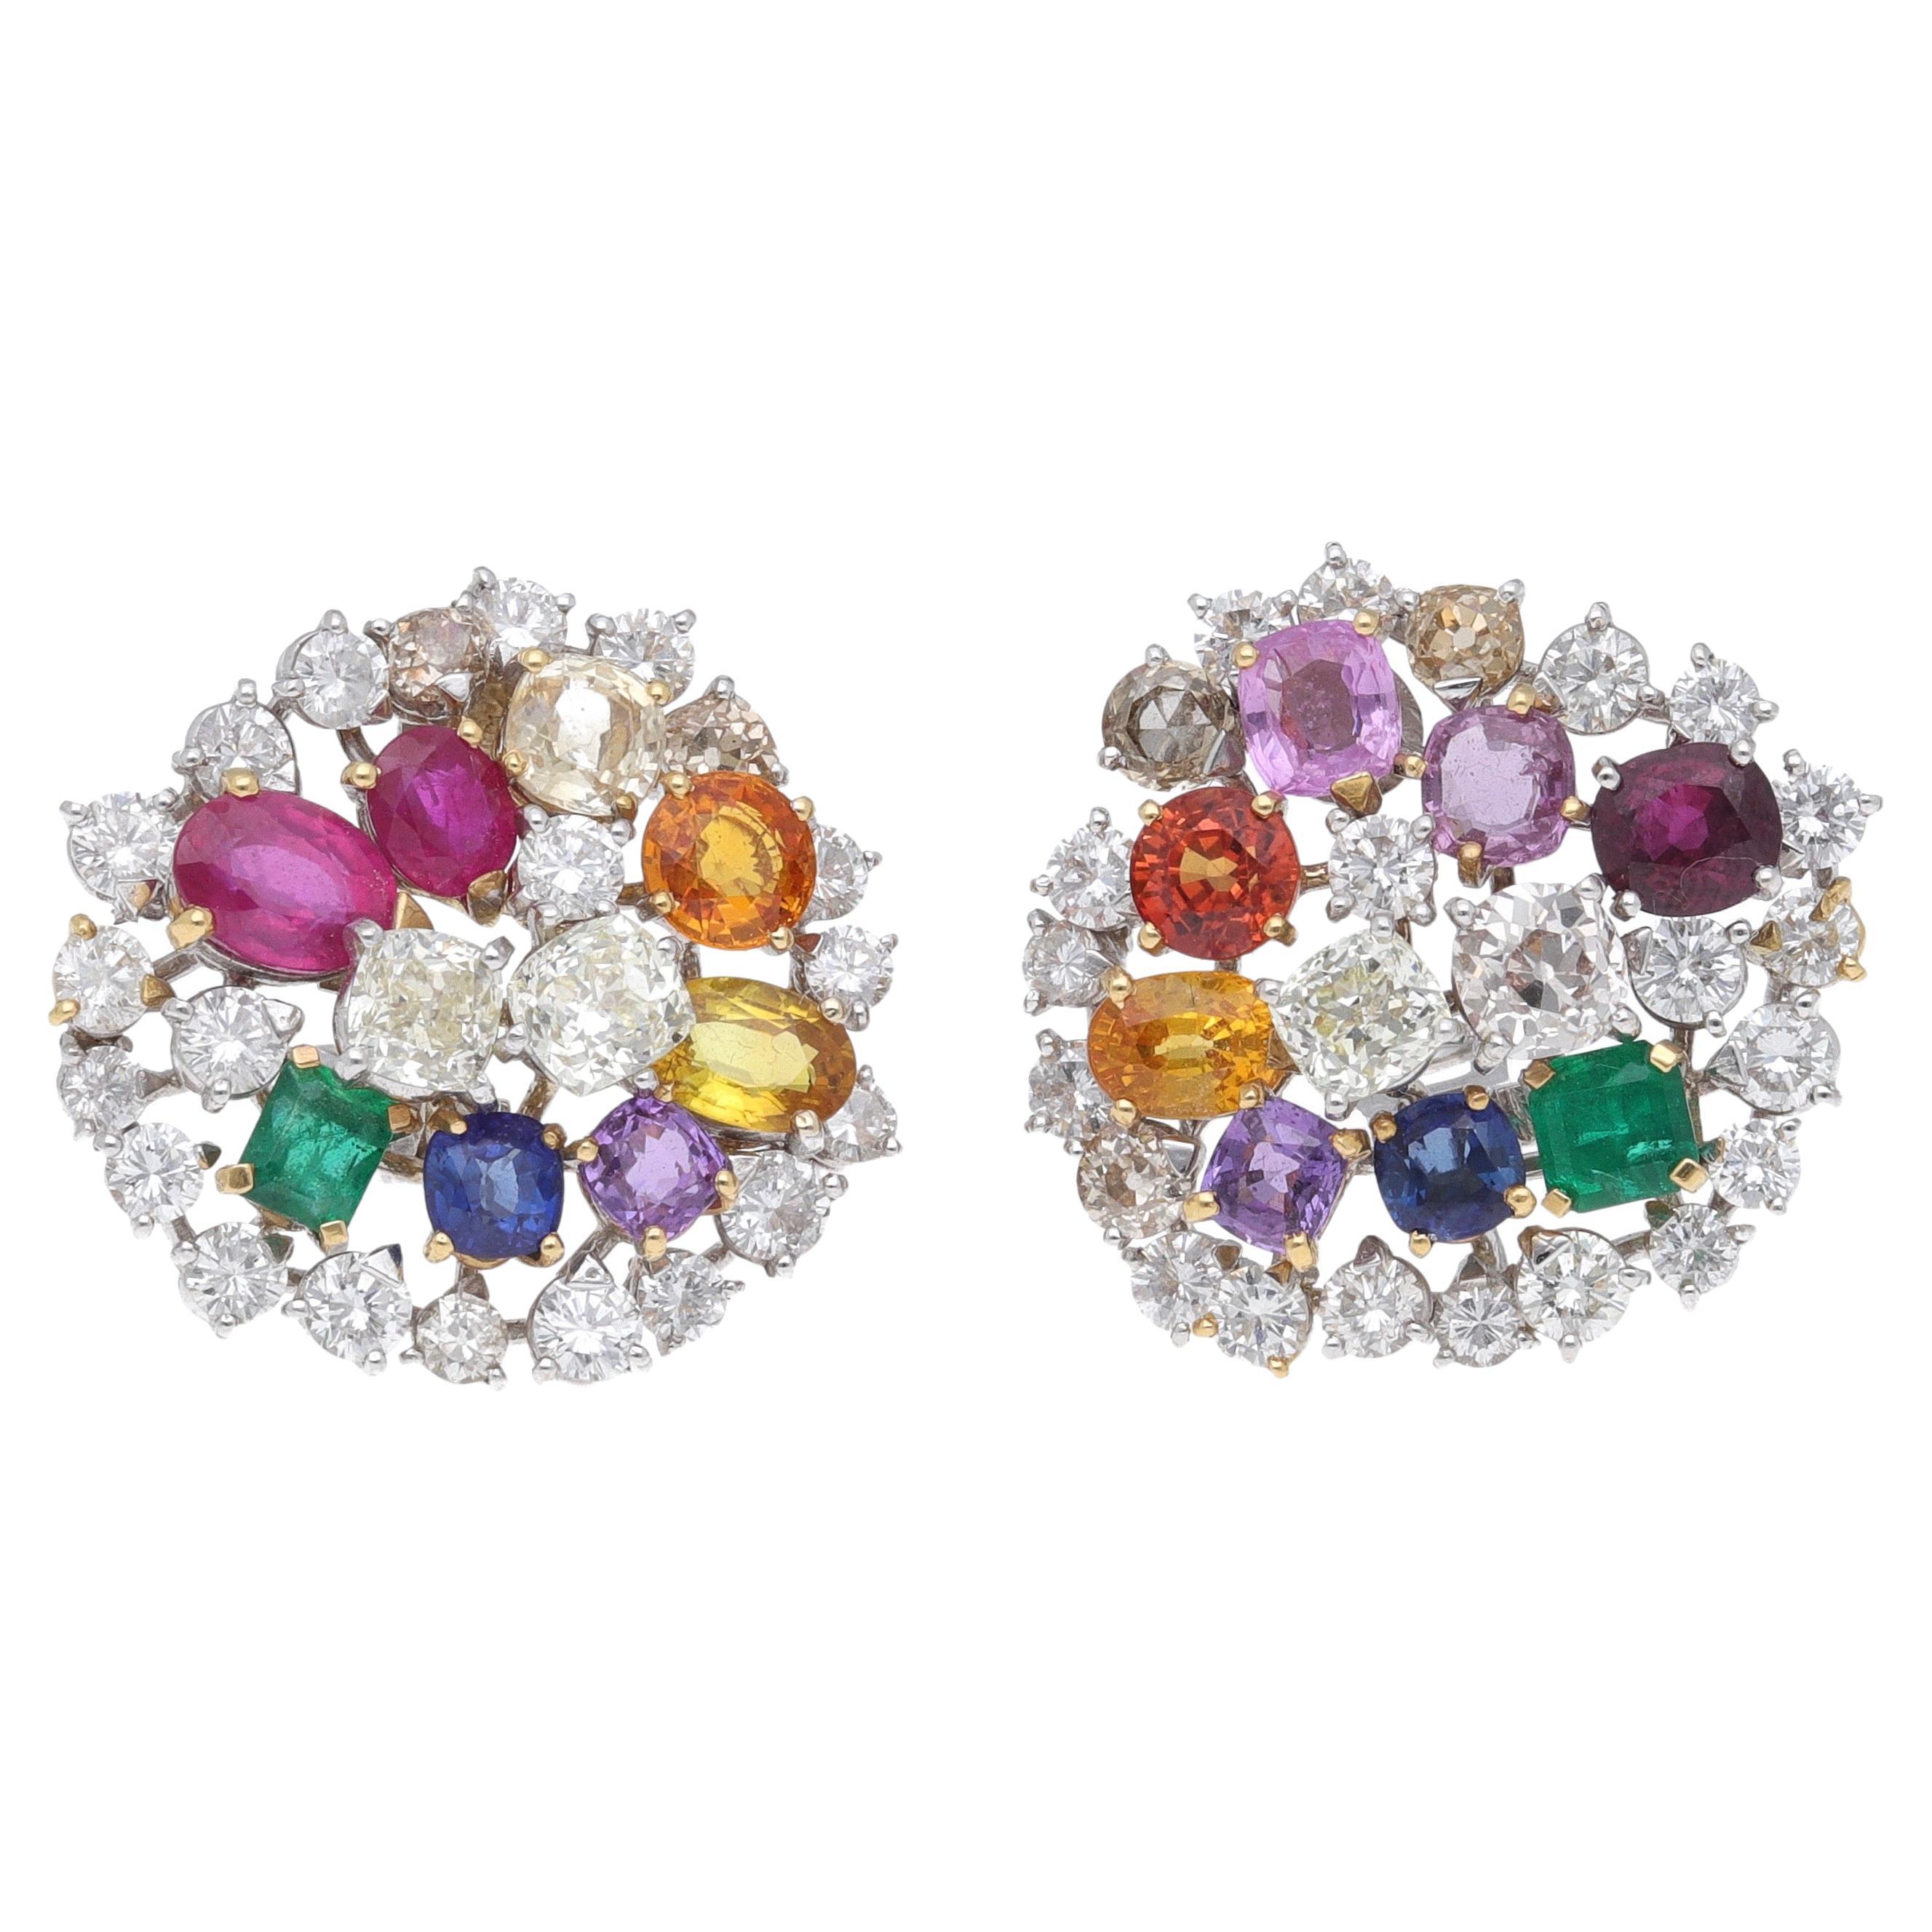 Fraleoni 18 Karat White Gold Diamonds Rubies Emeralds Sapphires Earrings For Sale